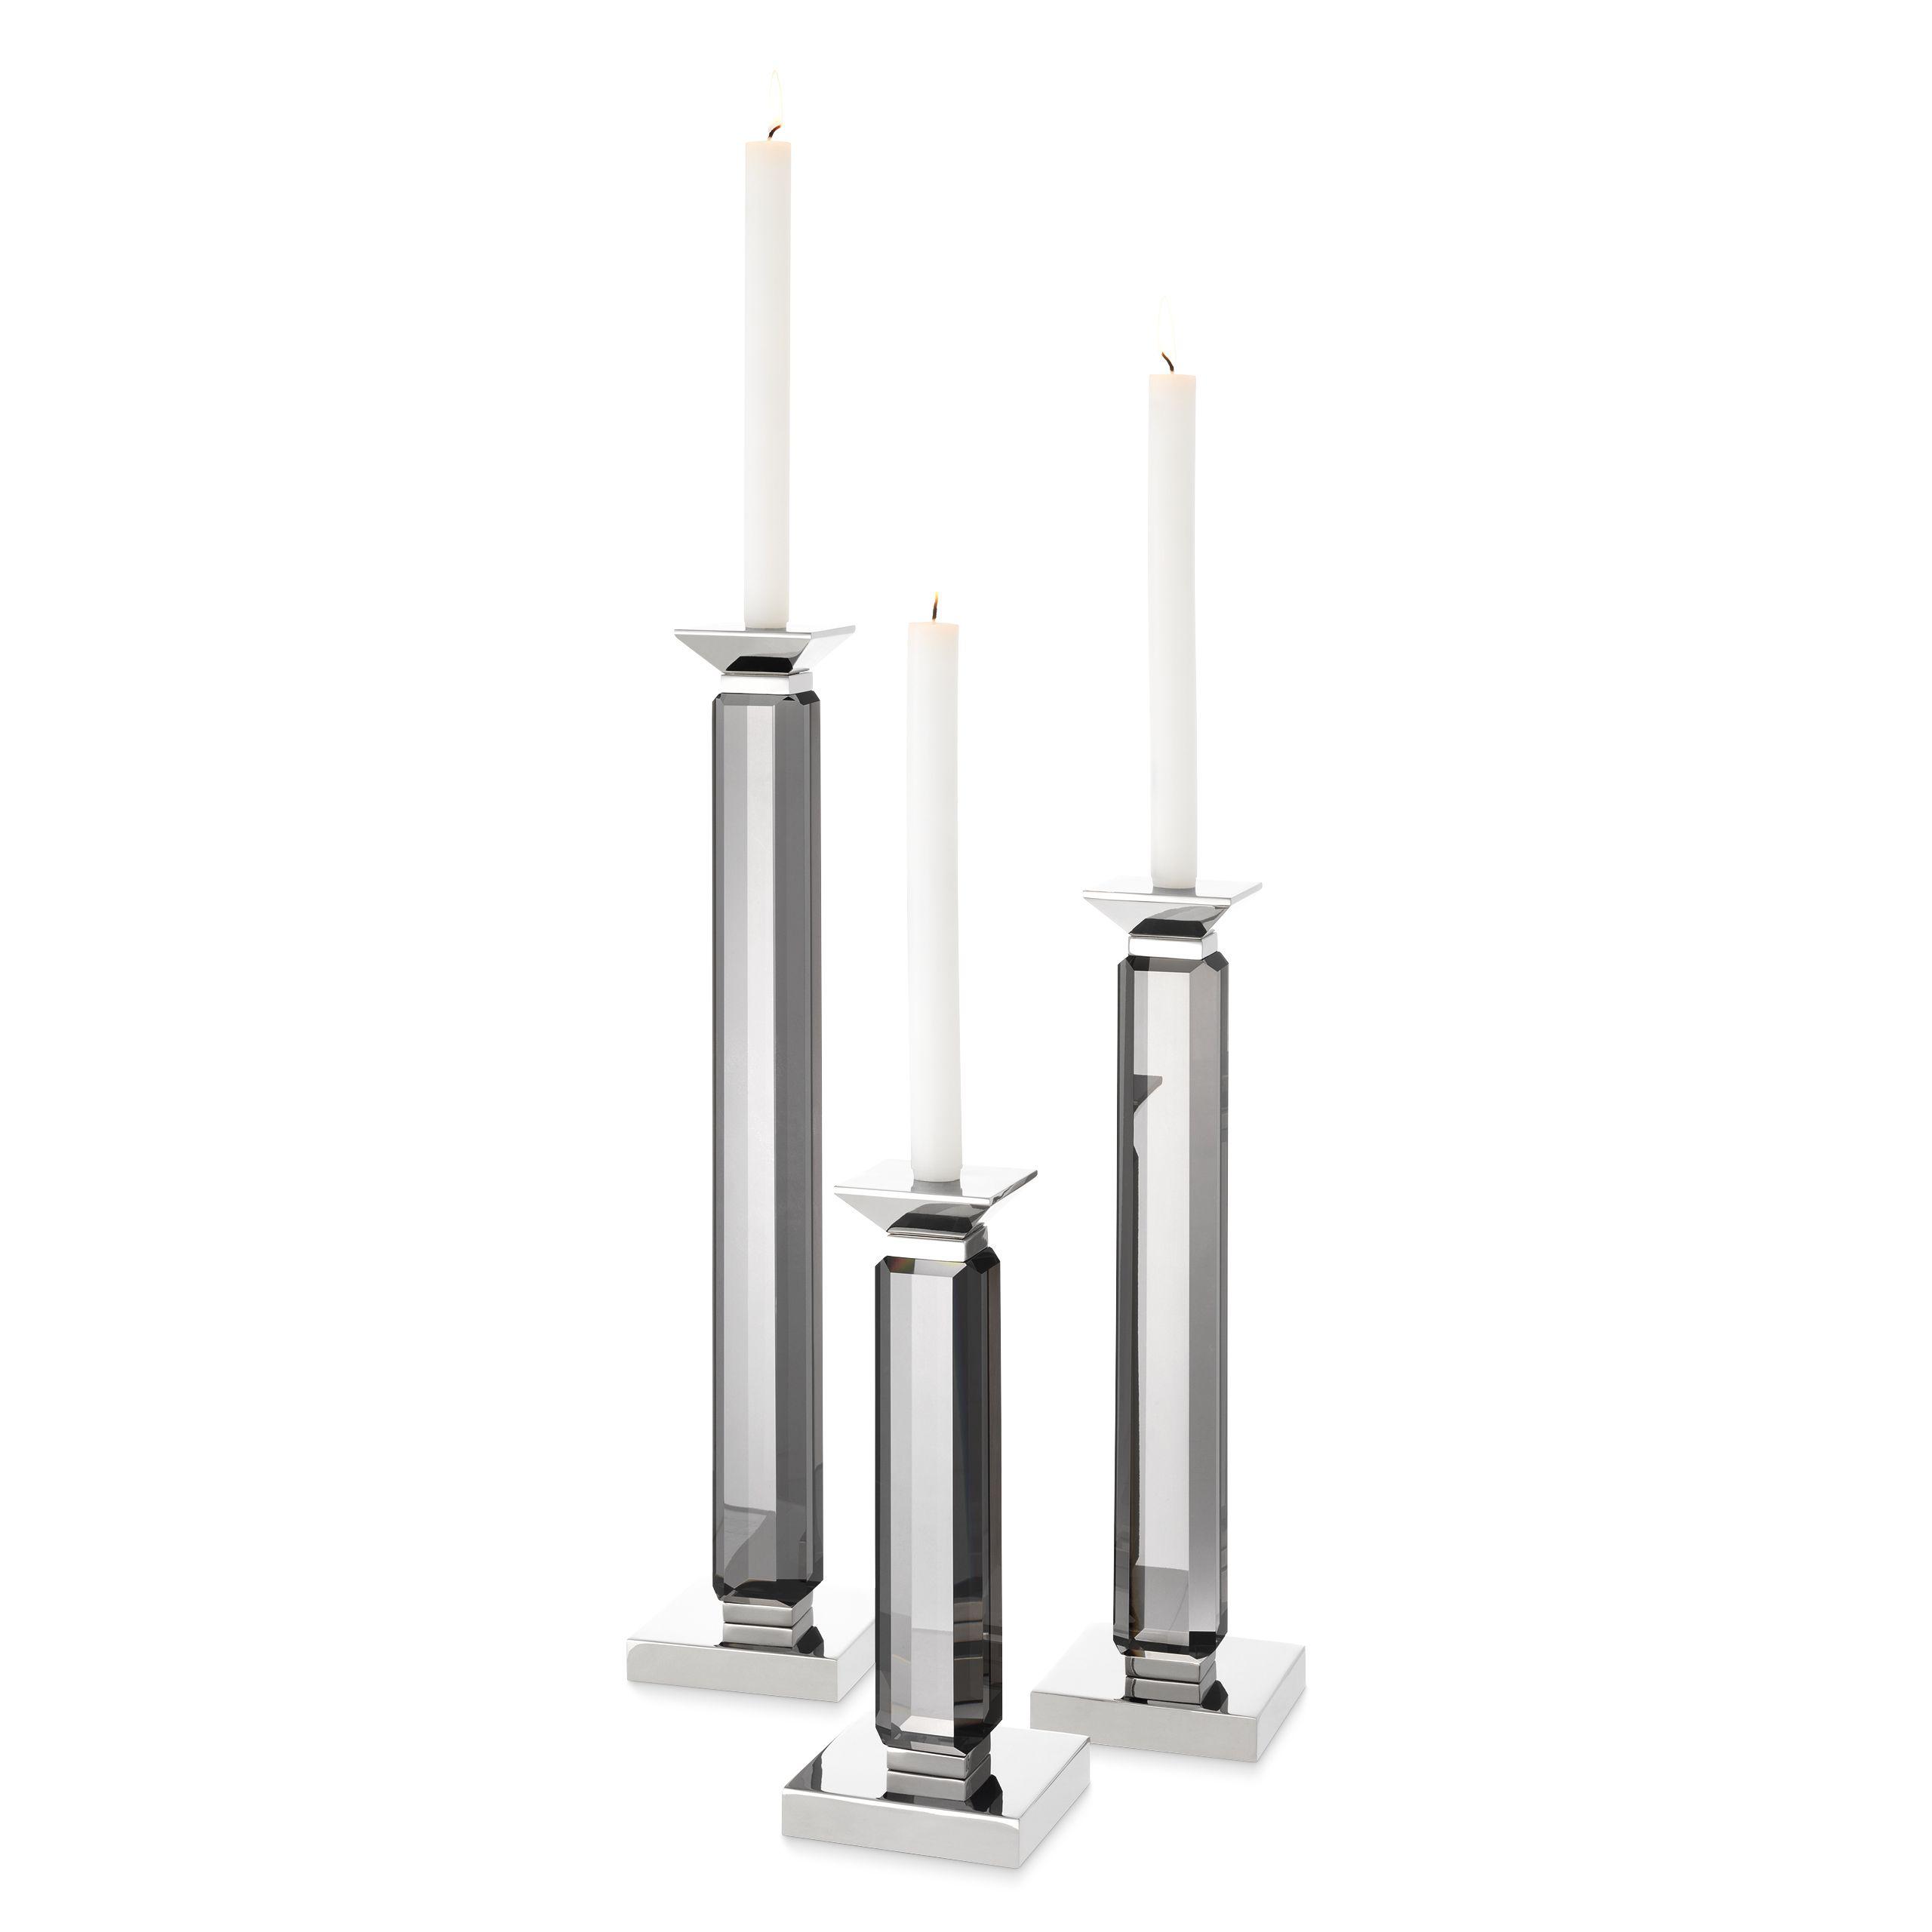 Купить Подсвечник Candle Holder Livia set of 3 в интернет-магазине roooms.ru